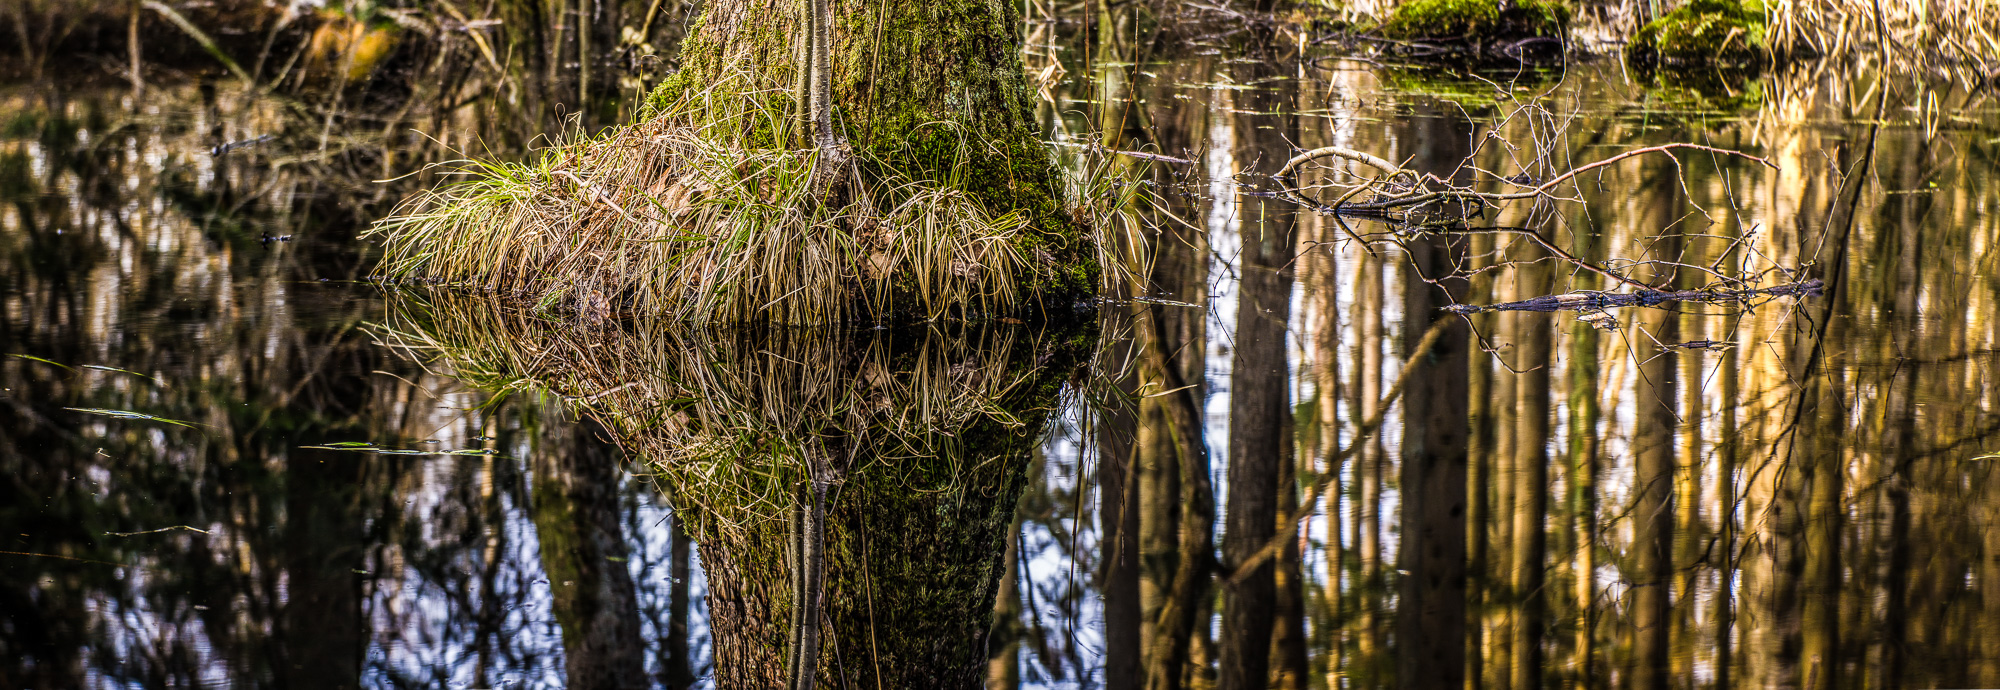 Ein einzelner Baum, von dem man nur den untersten ca. halben Meter sieht, wurzelt in einem Teich. Das Panorama-Querformat zeigt die Teichoberfläche, in der sich der Baumstamm und noch zahlreiche andere Bäume spiegeln.